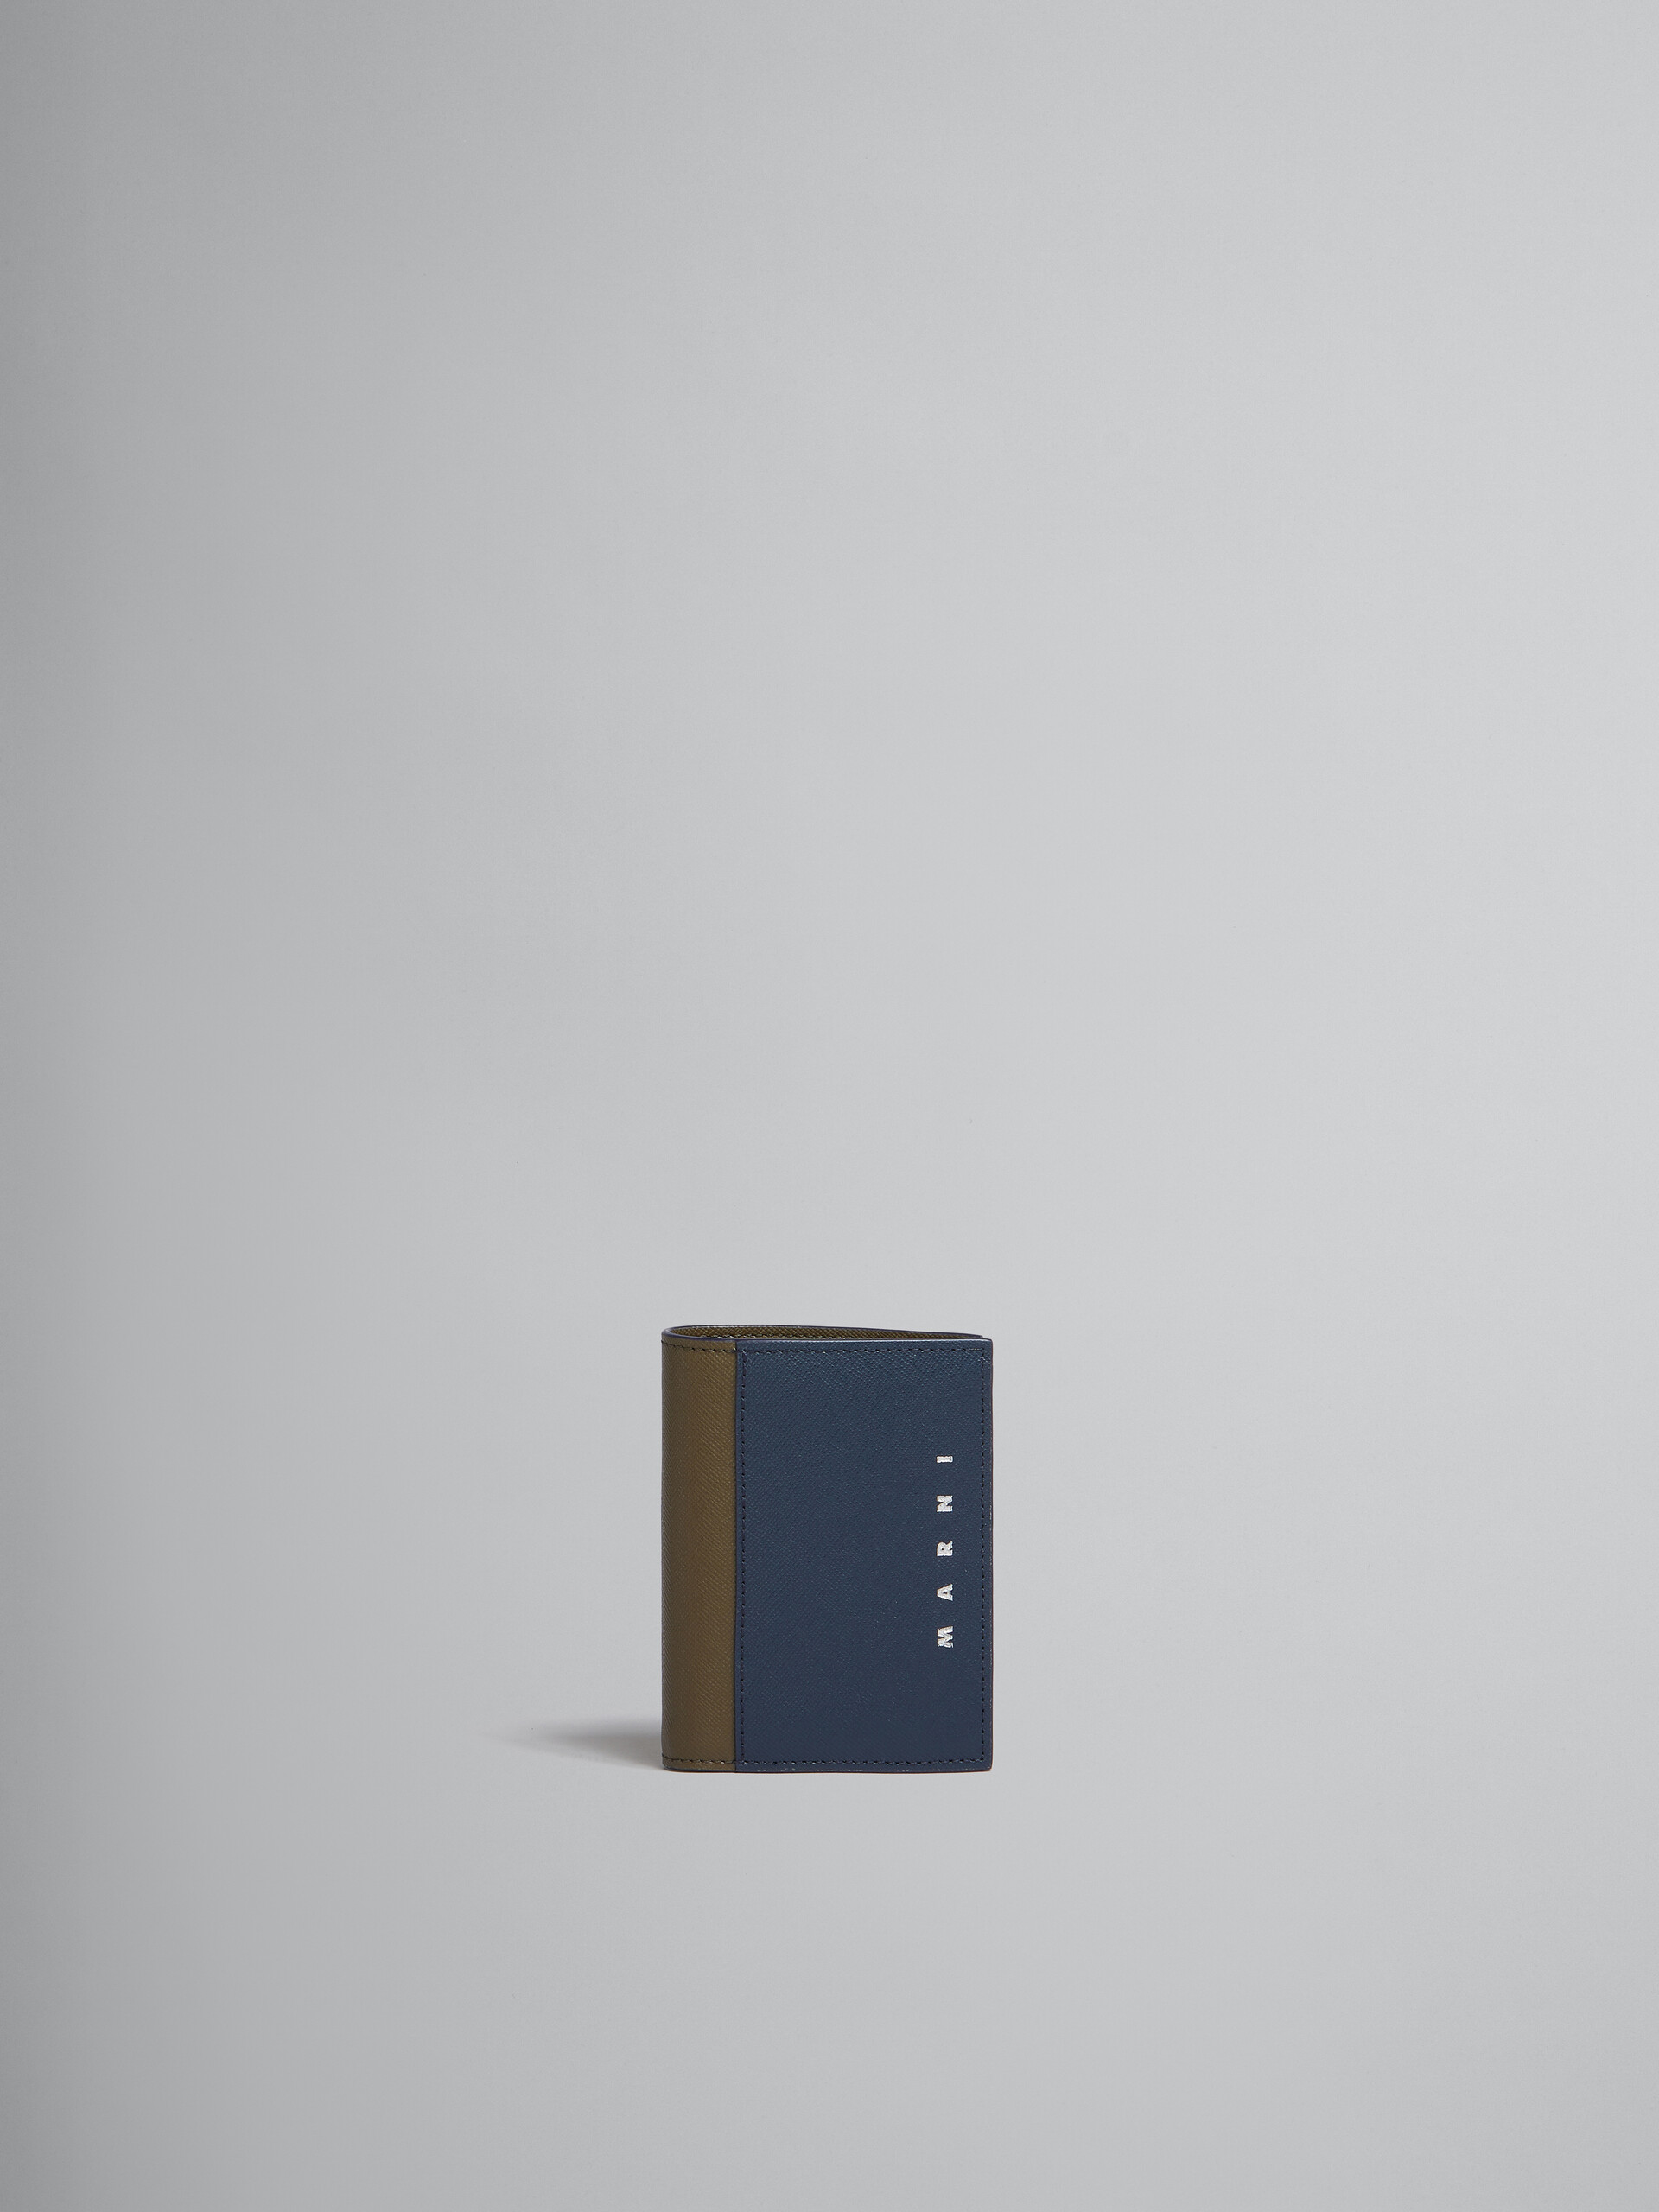 ディープブルー グリーン サフィアーノレザー製 二つ折りウォレット - 財布 - Image 1